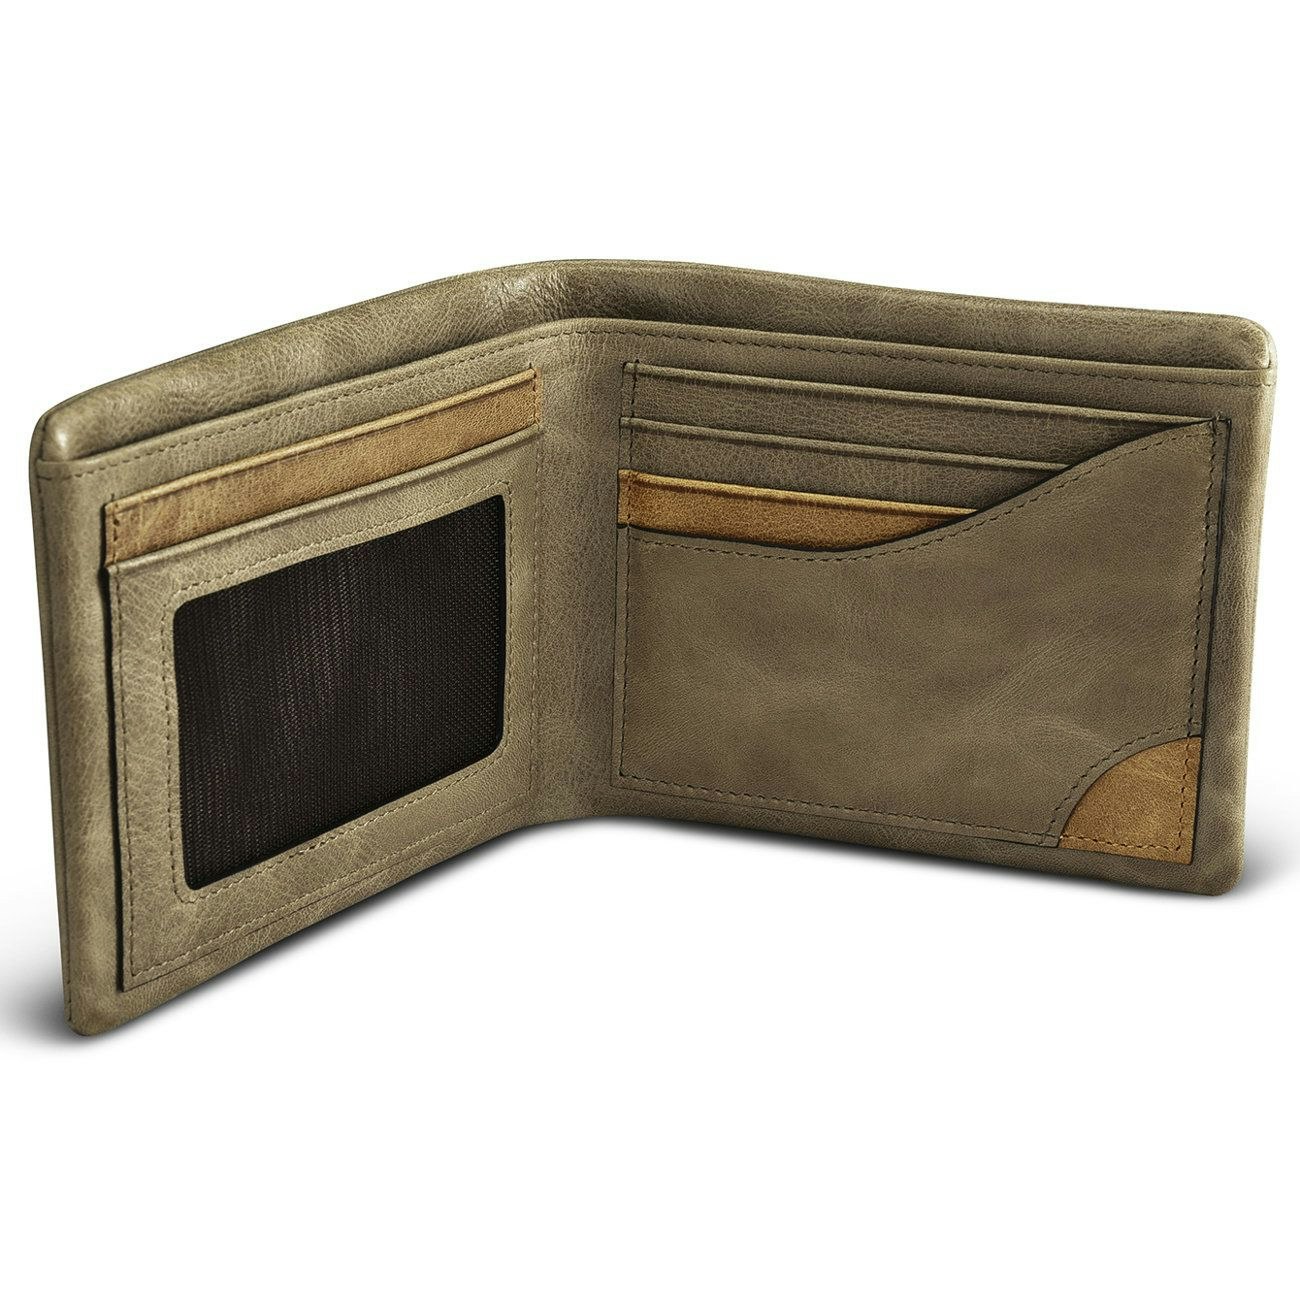 iCarer plånbok i khaki läder bild4